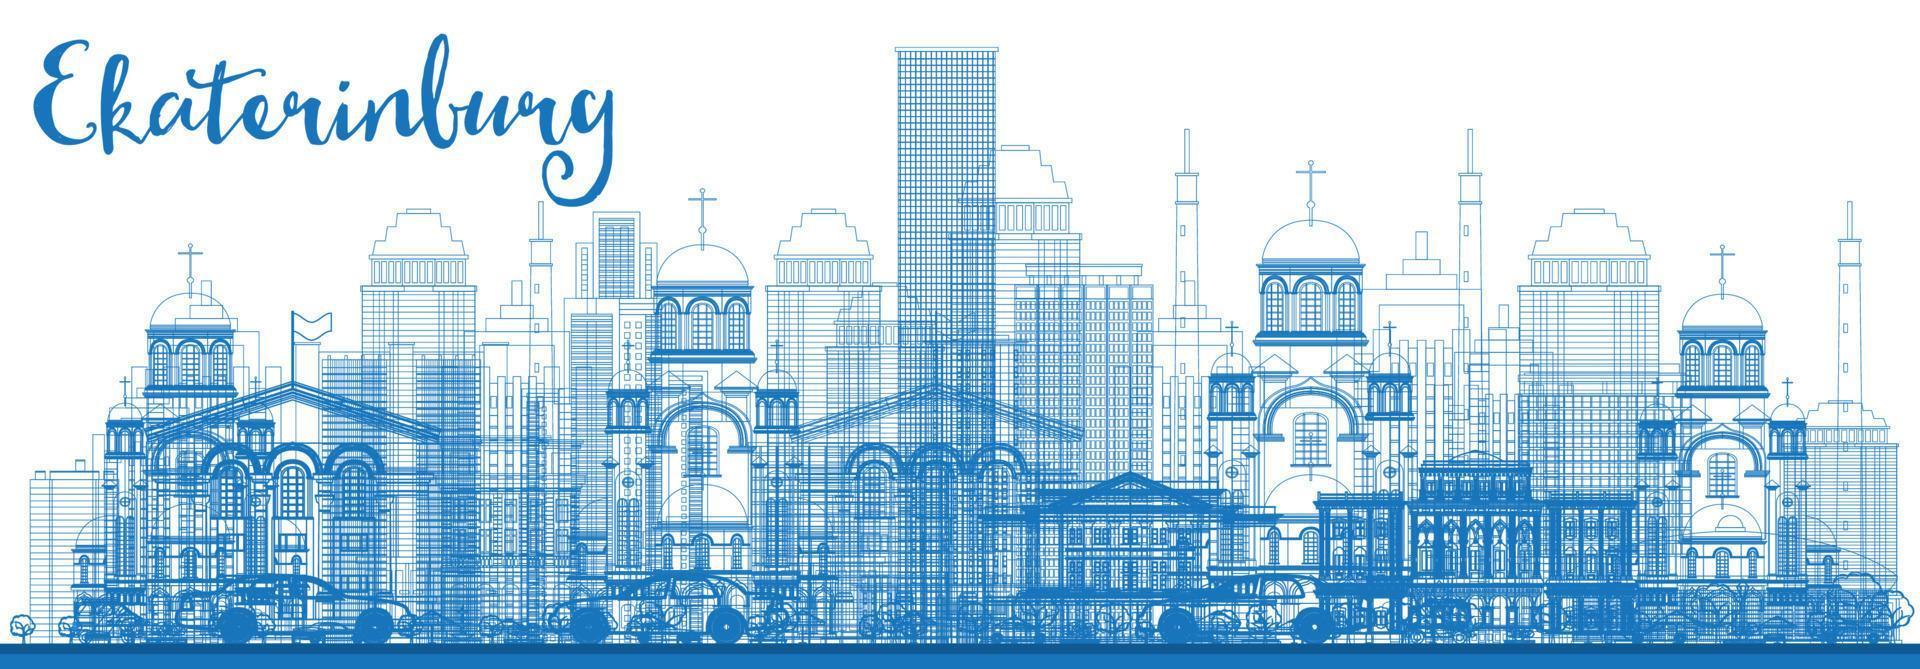 delinear el horizonte de ekaterimburgo con edificios azules. vector